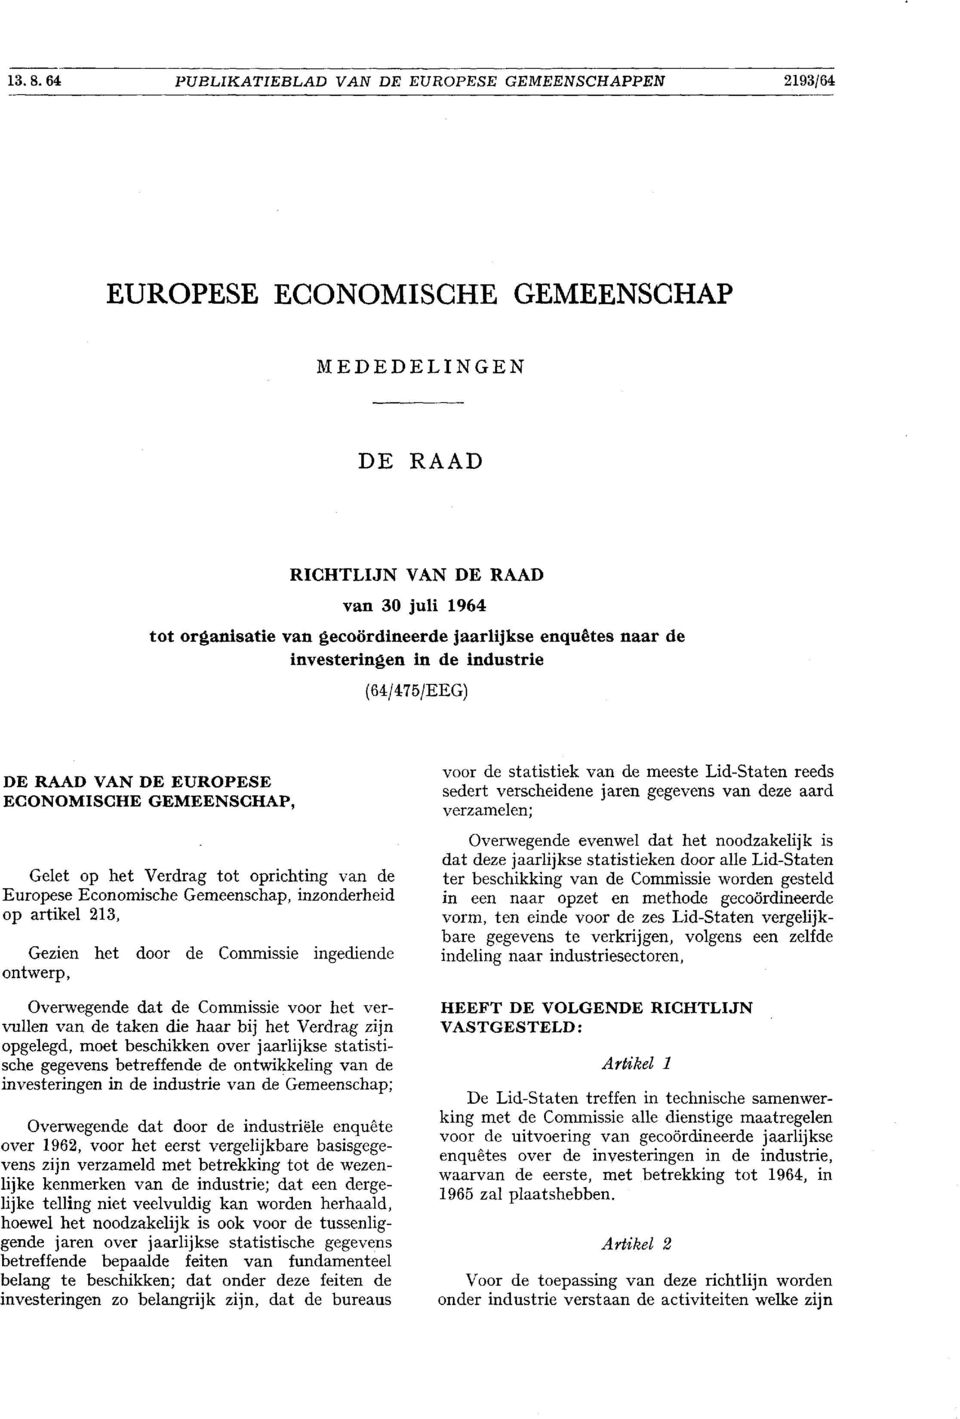 enquetes naar de investeringen in de industrie 64 /475/EEG DE RAAD VAN DE EUROPESE ECONOMISCHE GEMEENSCHAP, Gelet op het Verdrag tot oprichting van de Europese Economische Gemeenschap, inzonderheid